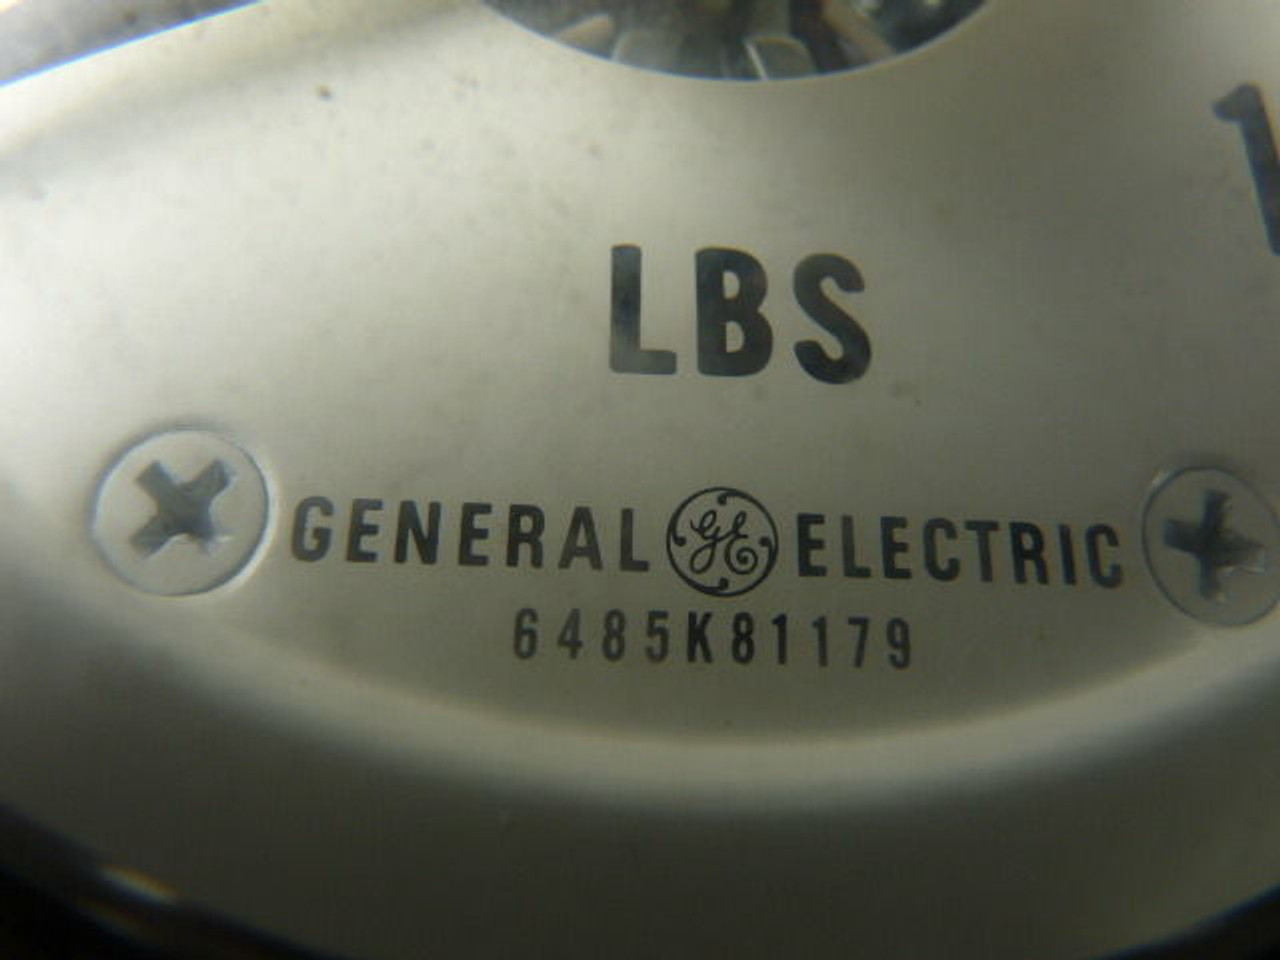 General Electric 6485K81179 DC Panel Meter 0-100lbs Range USED